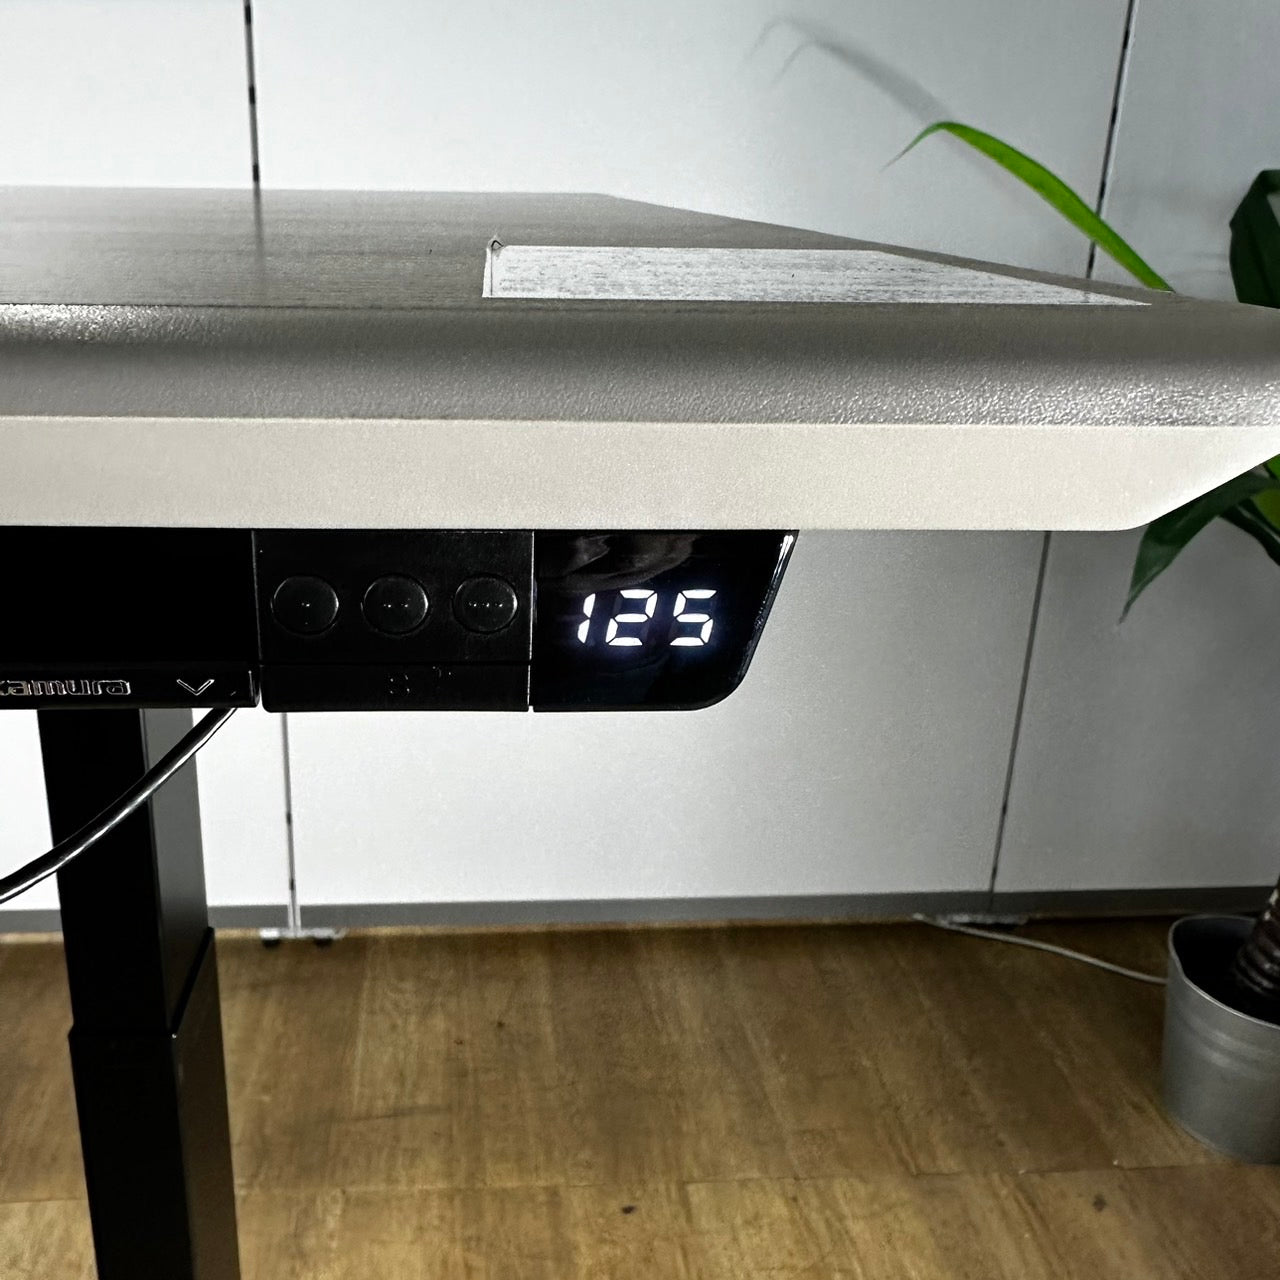 オカムラ 電動昇降デスク スイフトシリーズ ミーティング 会議テーブル W1800 2020年製 中古